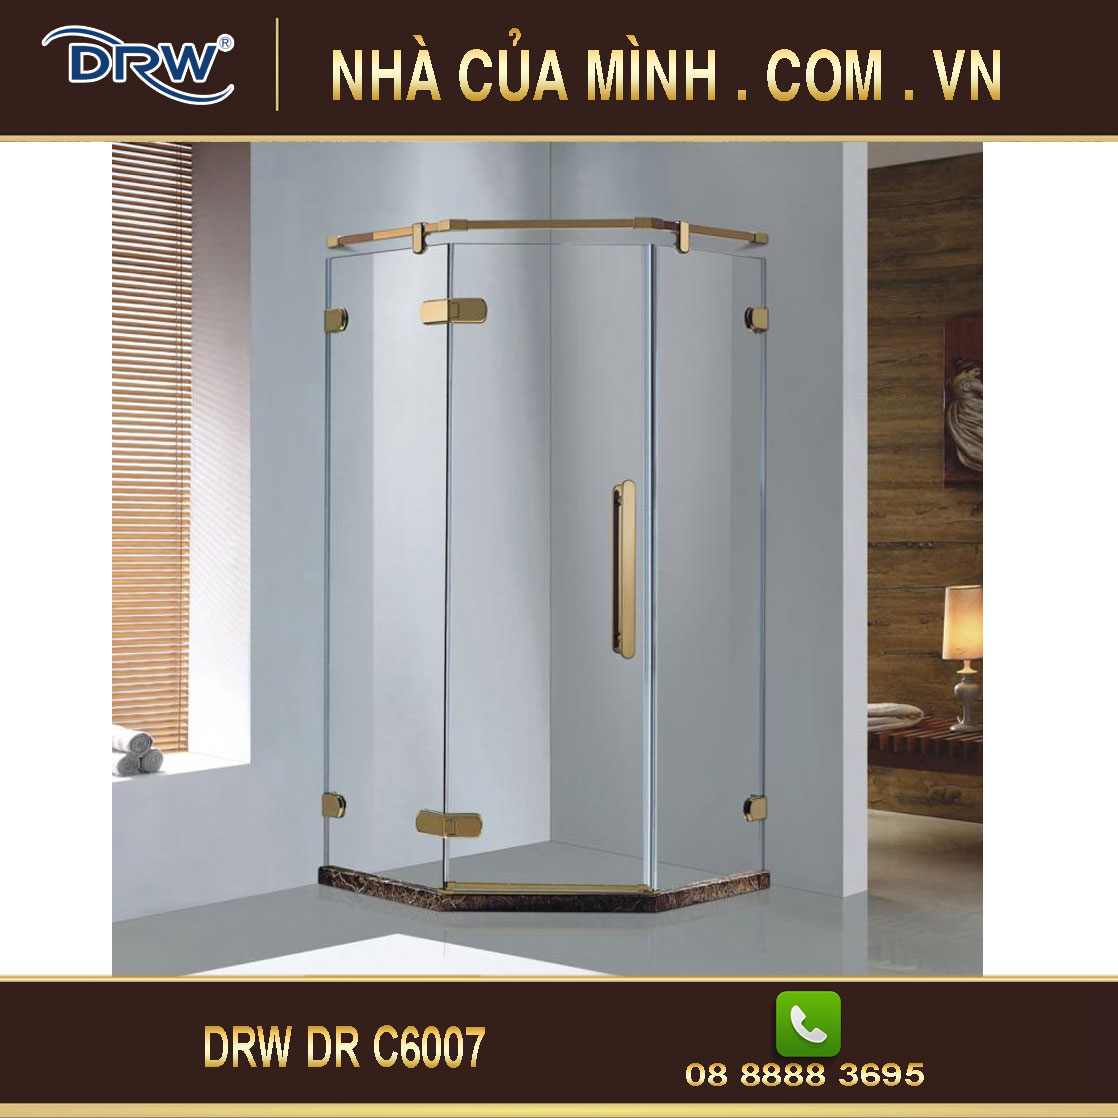 Vách kính phòng tắm DRW DR C6007 cao cấp